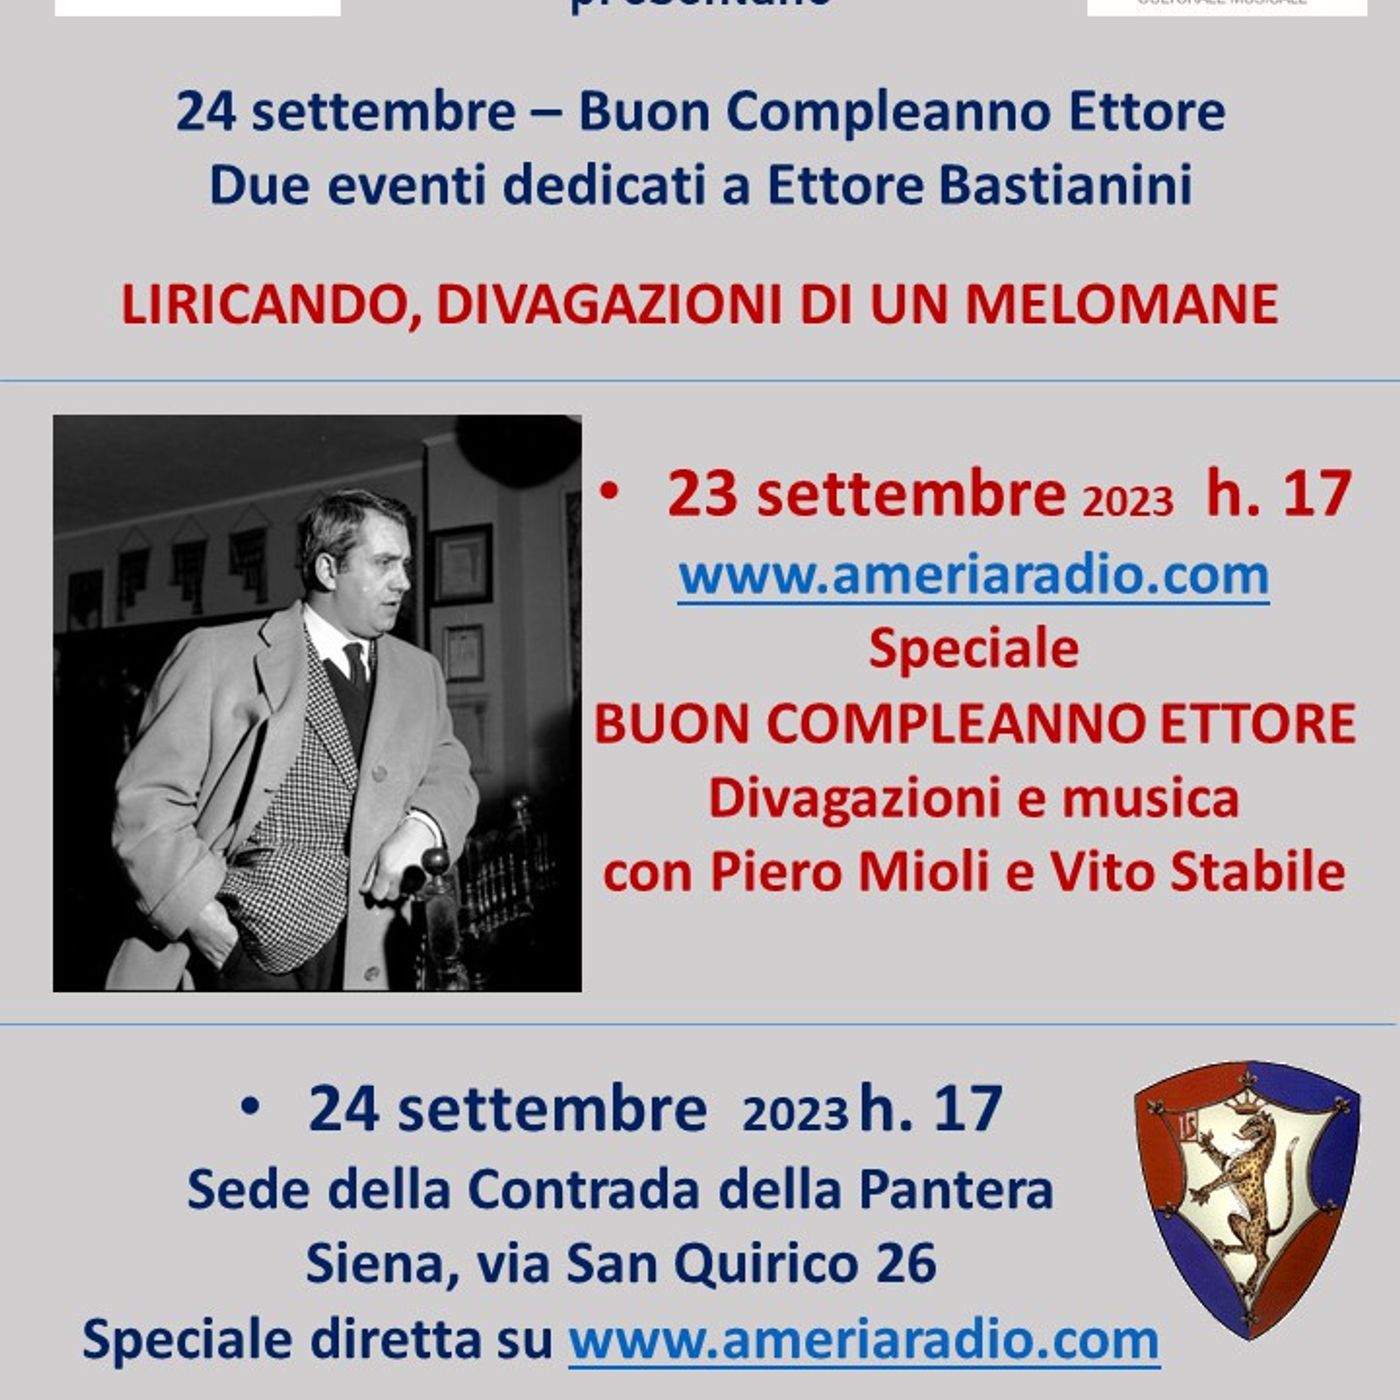 Buon compleanno Ettore Bastianini